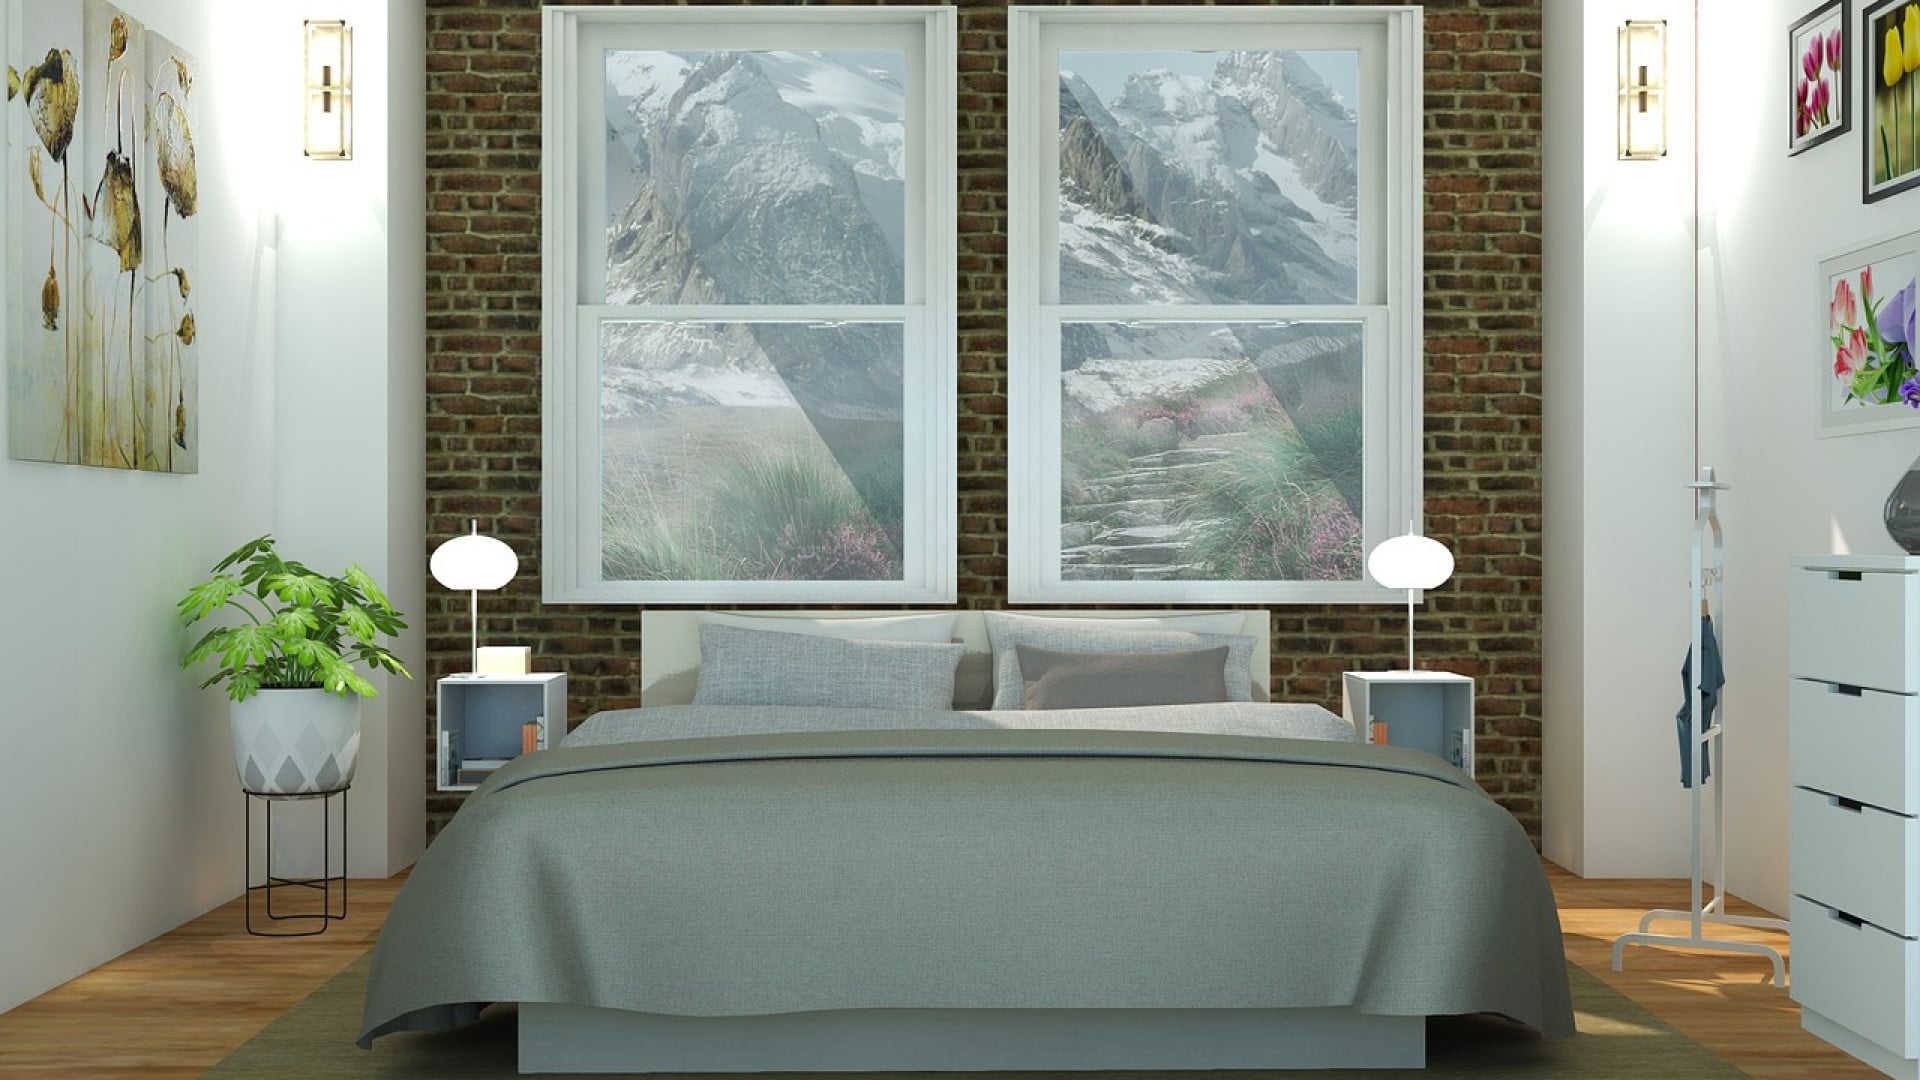 Chambre moderne avec un grand lit adapté à vos besoins, des murs de brique et des fenêtres avec vue sur la montagne.